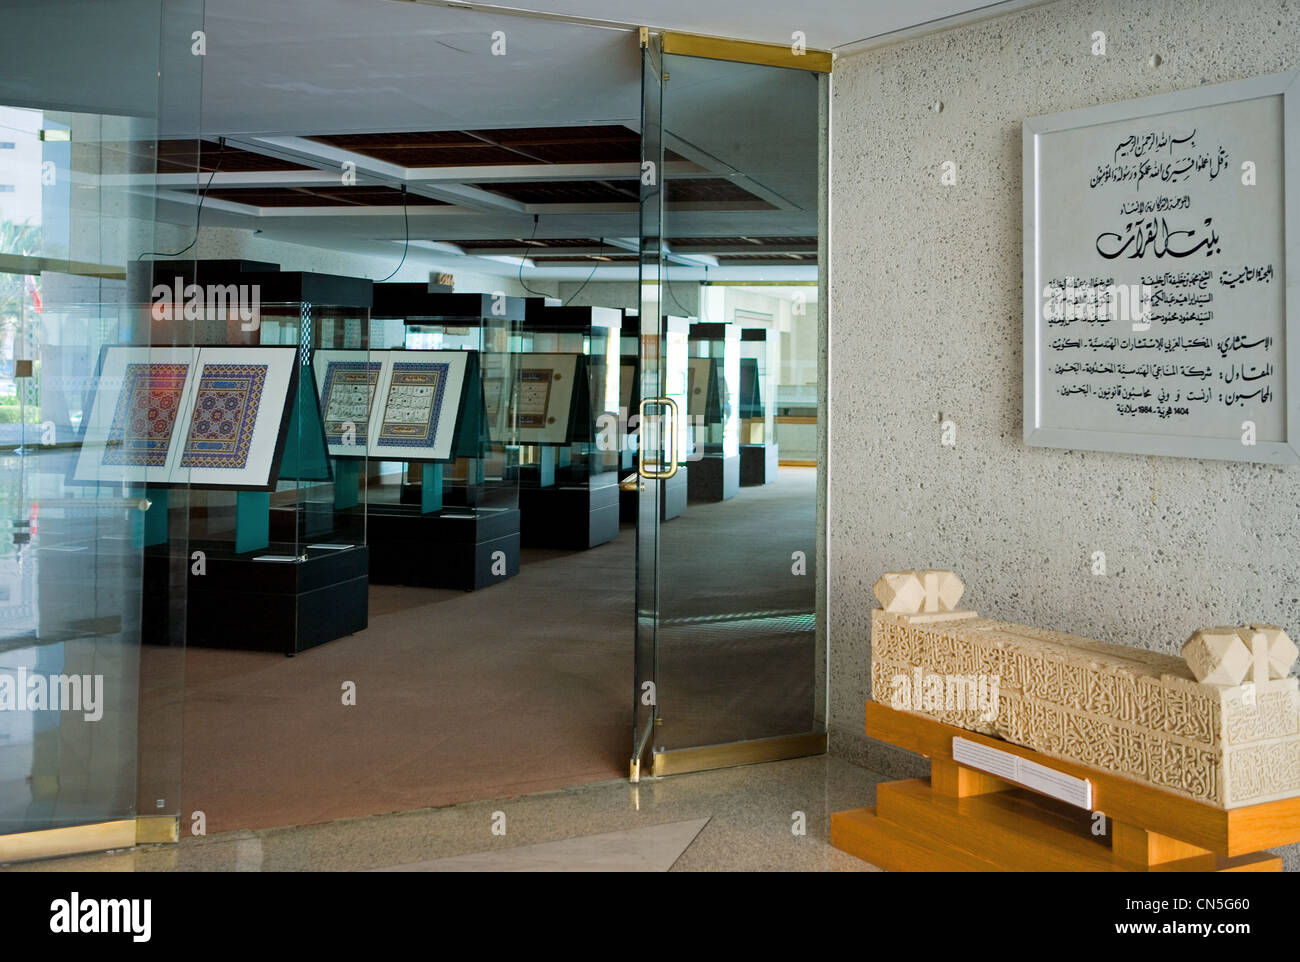 Bahrain, Manama, interne Detail des islamischen Kultur Center Beit Al Quran Stockfoto